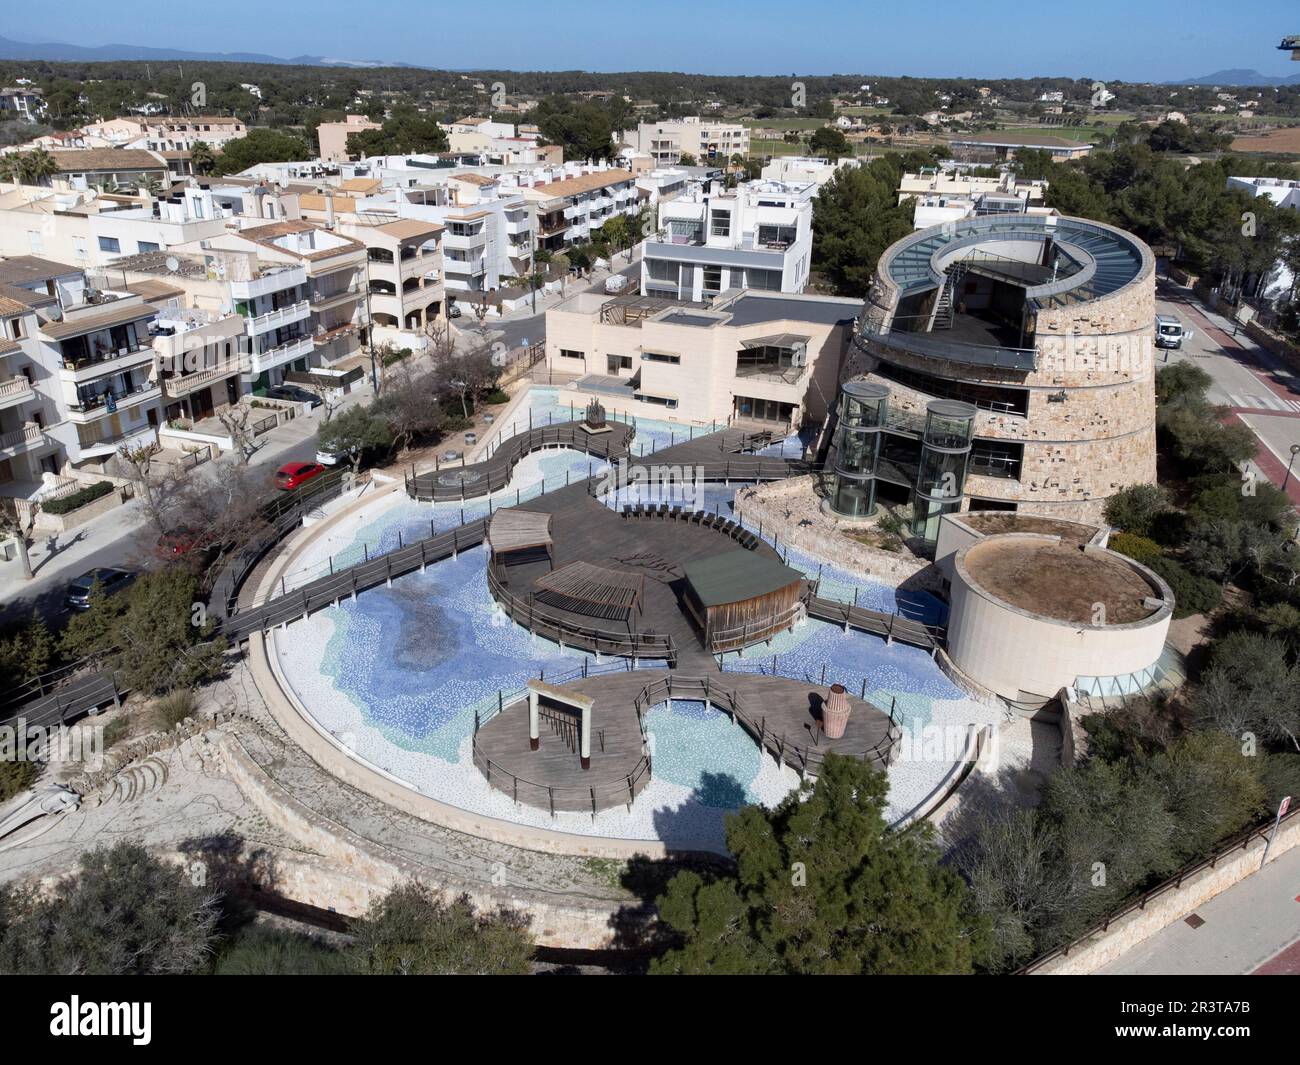 Centre d'interprétation de Cabrera, vue sur le bâtiment et piscines, Colònia de Sant Jordi, ses Salines, Majorque, Iles Baléares, Espagne. Banque D'Images